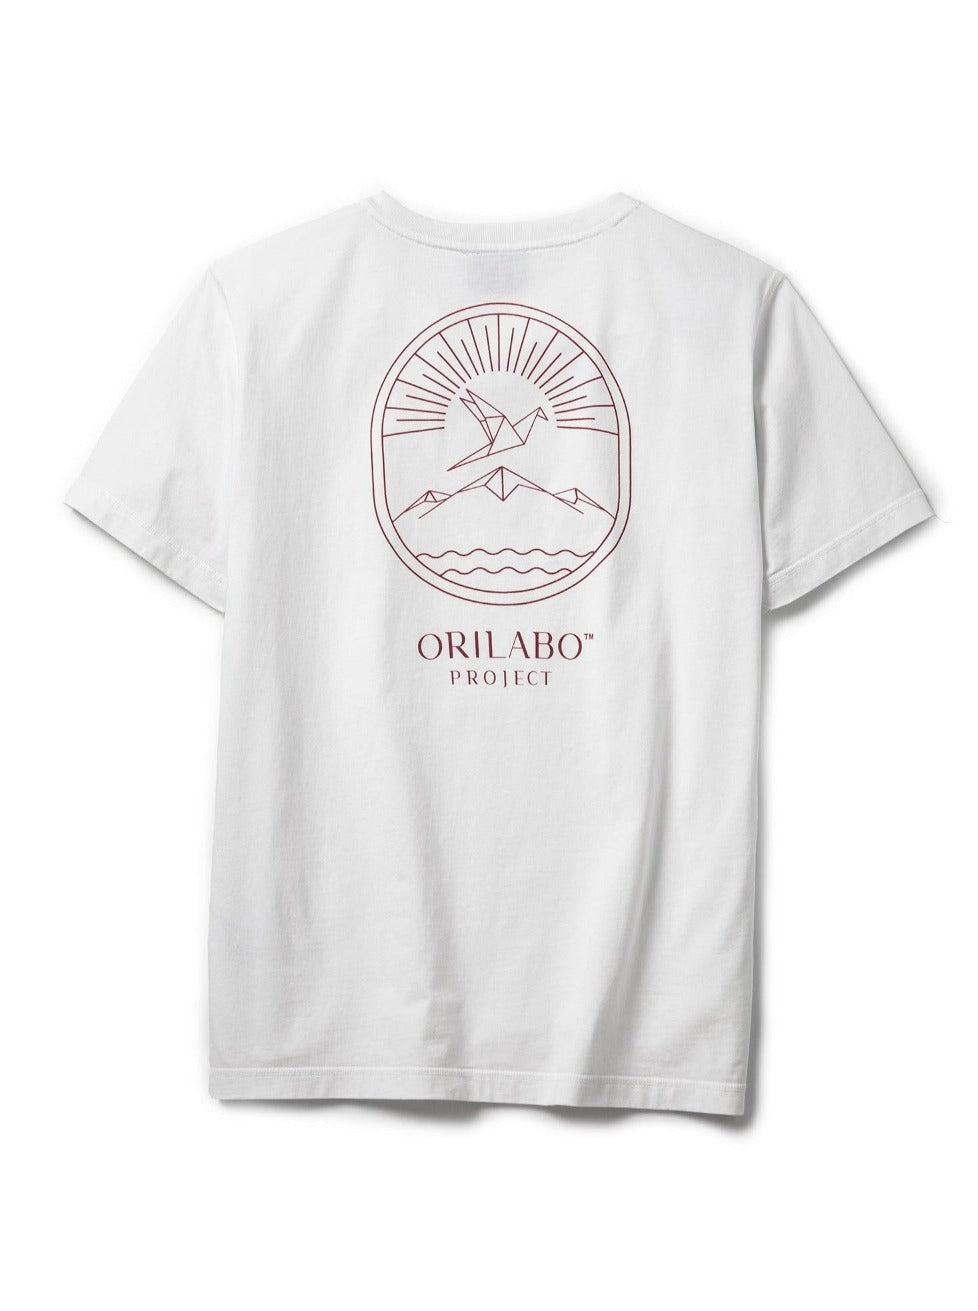 Men's ORILABO Mountain Short Sleeve T-shirt - White - ORILABO Project